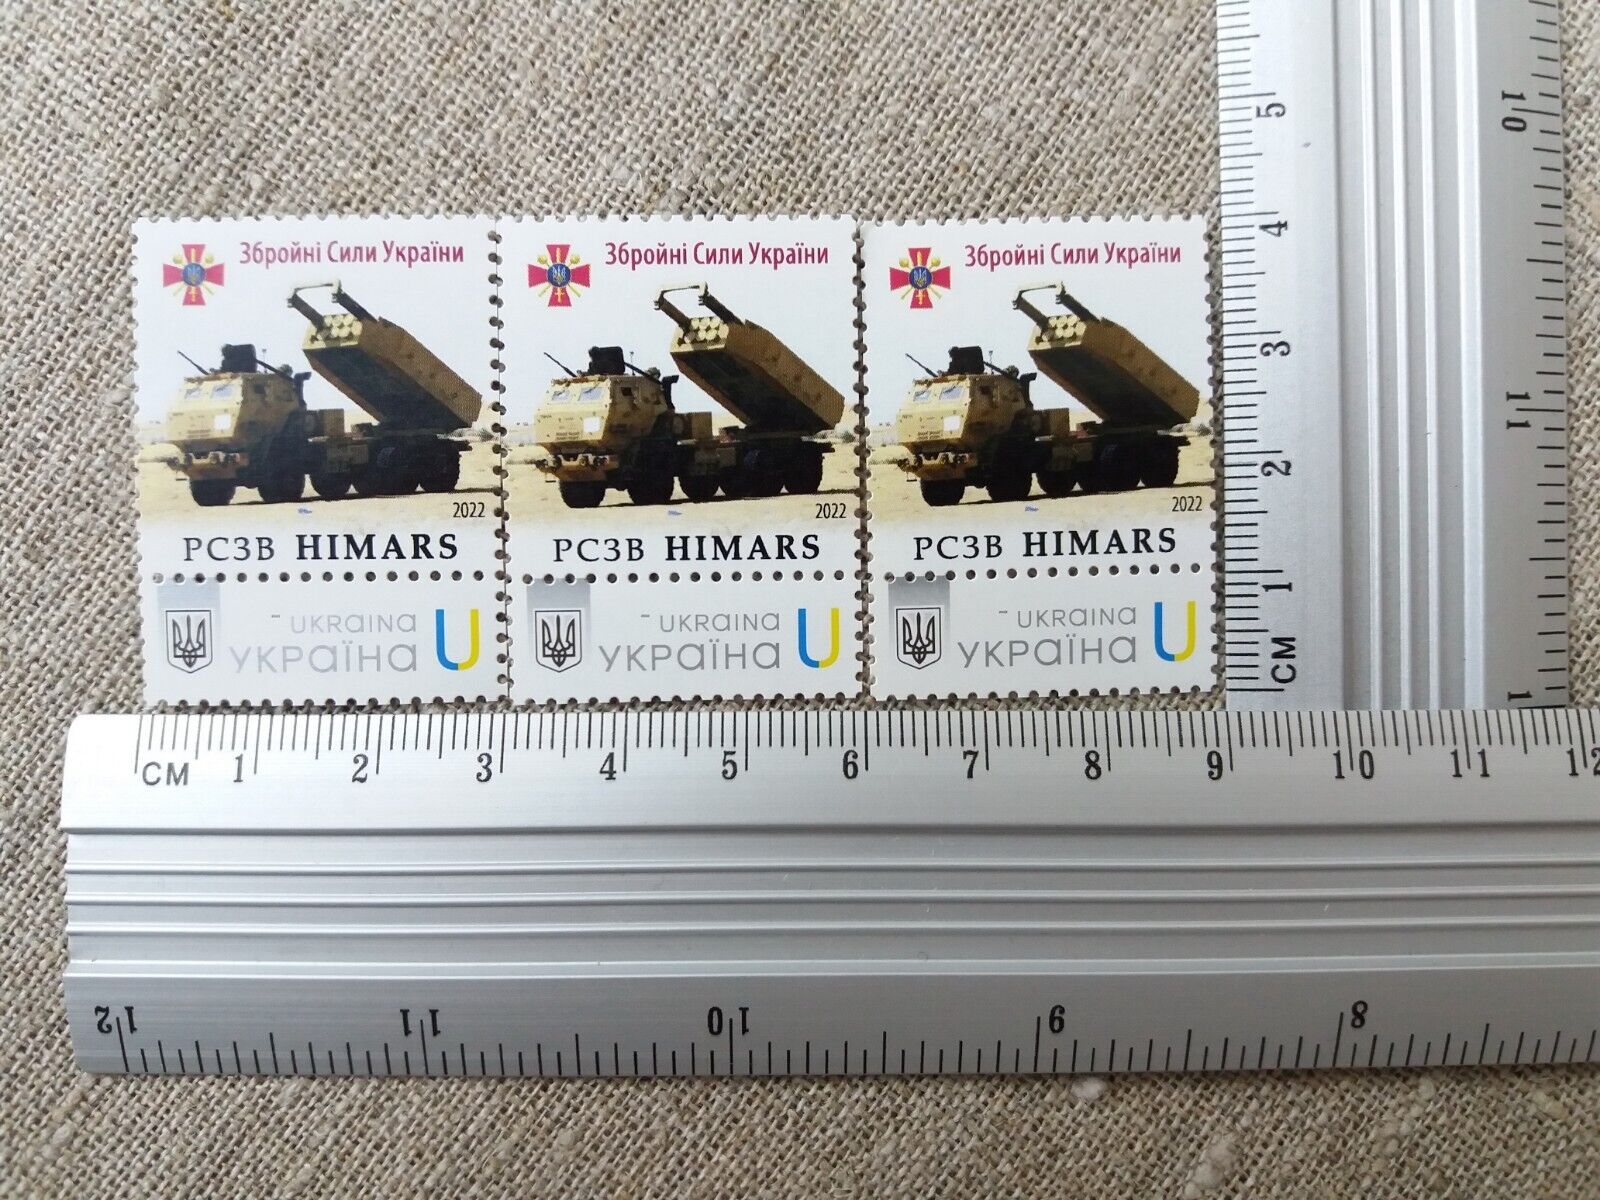 Postage stamp APU M142 HIMARS War Ukraine 2022 Без бренда - фотография #5